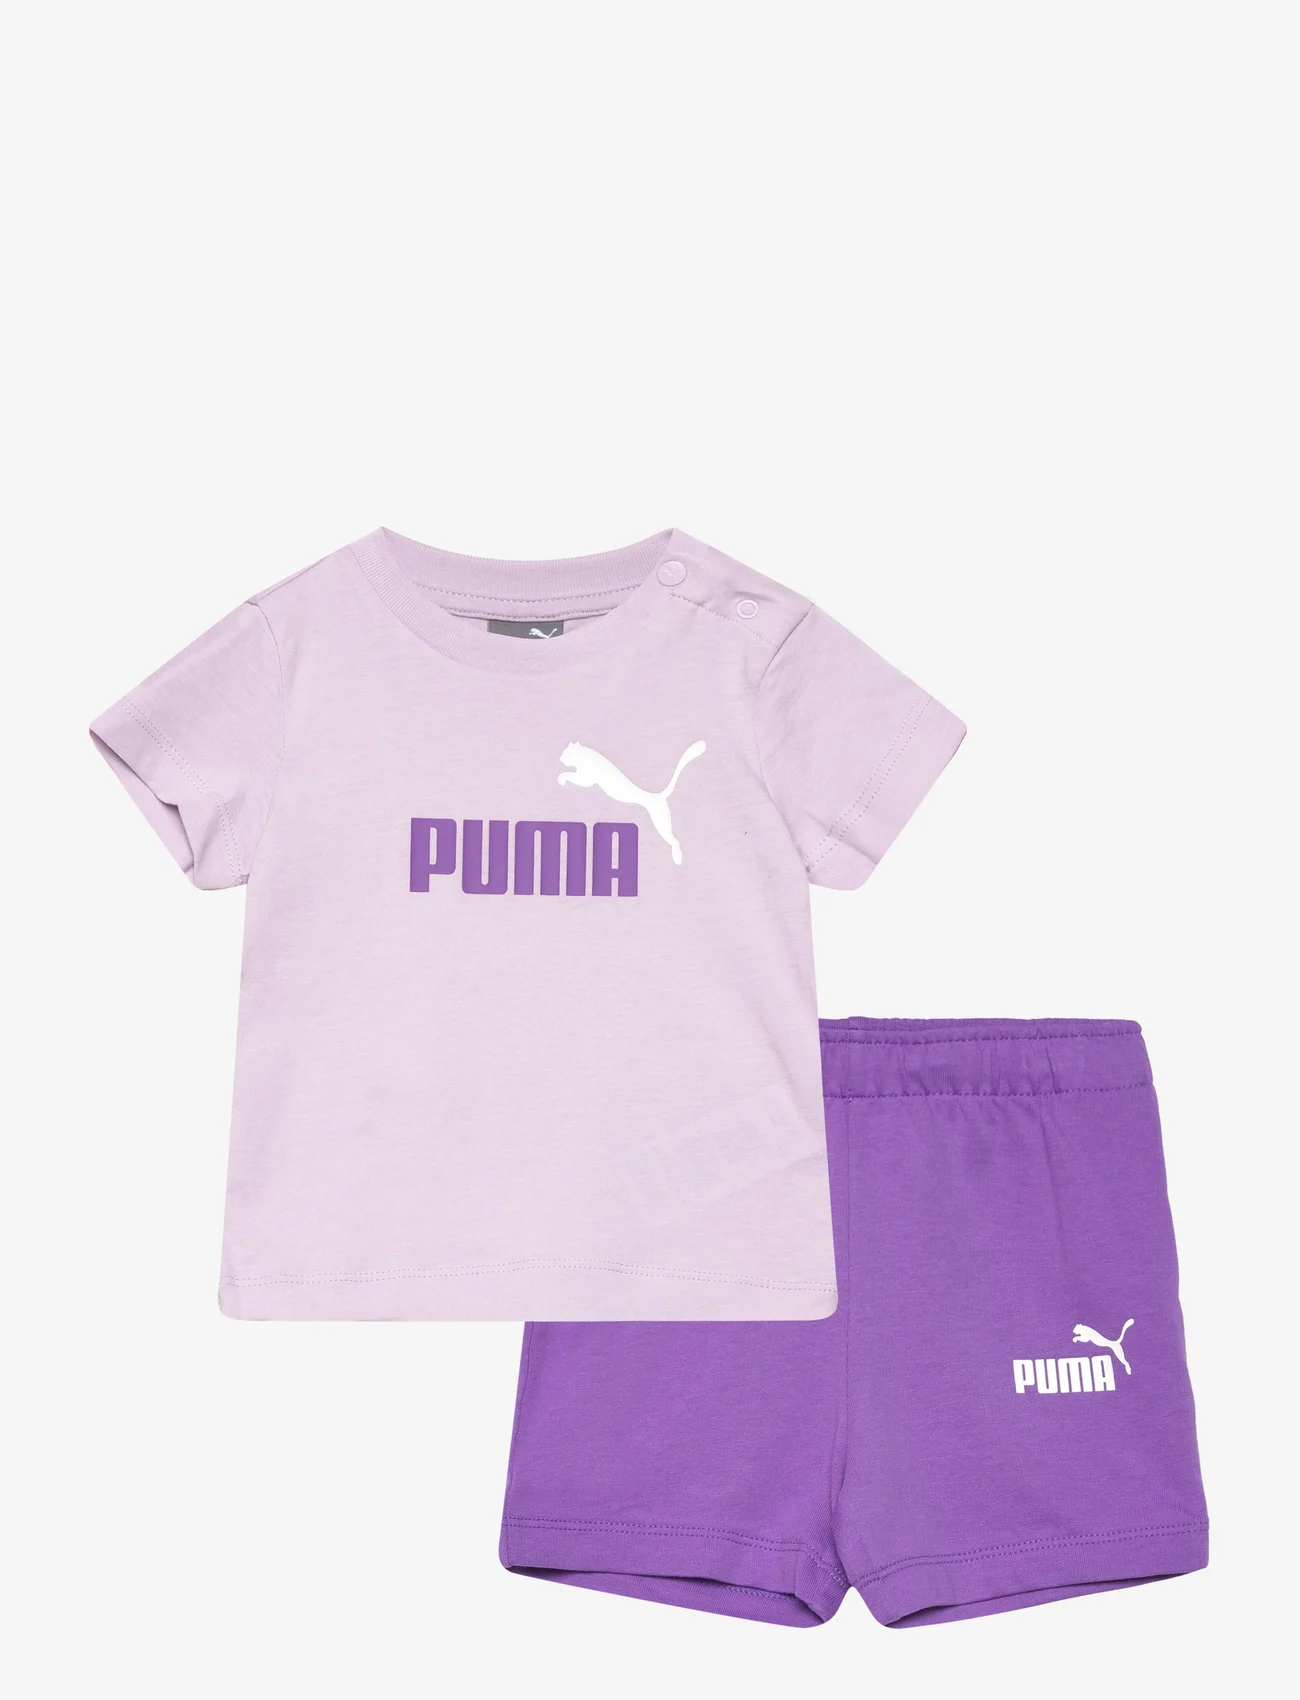 PUMA - Minicats Tee & Shorts Set - clothes - grape mist - 0